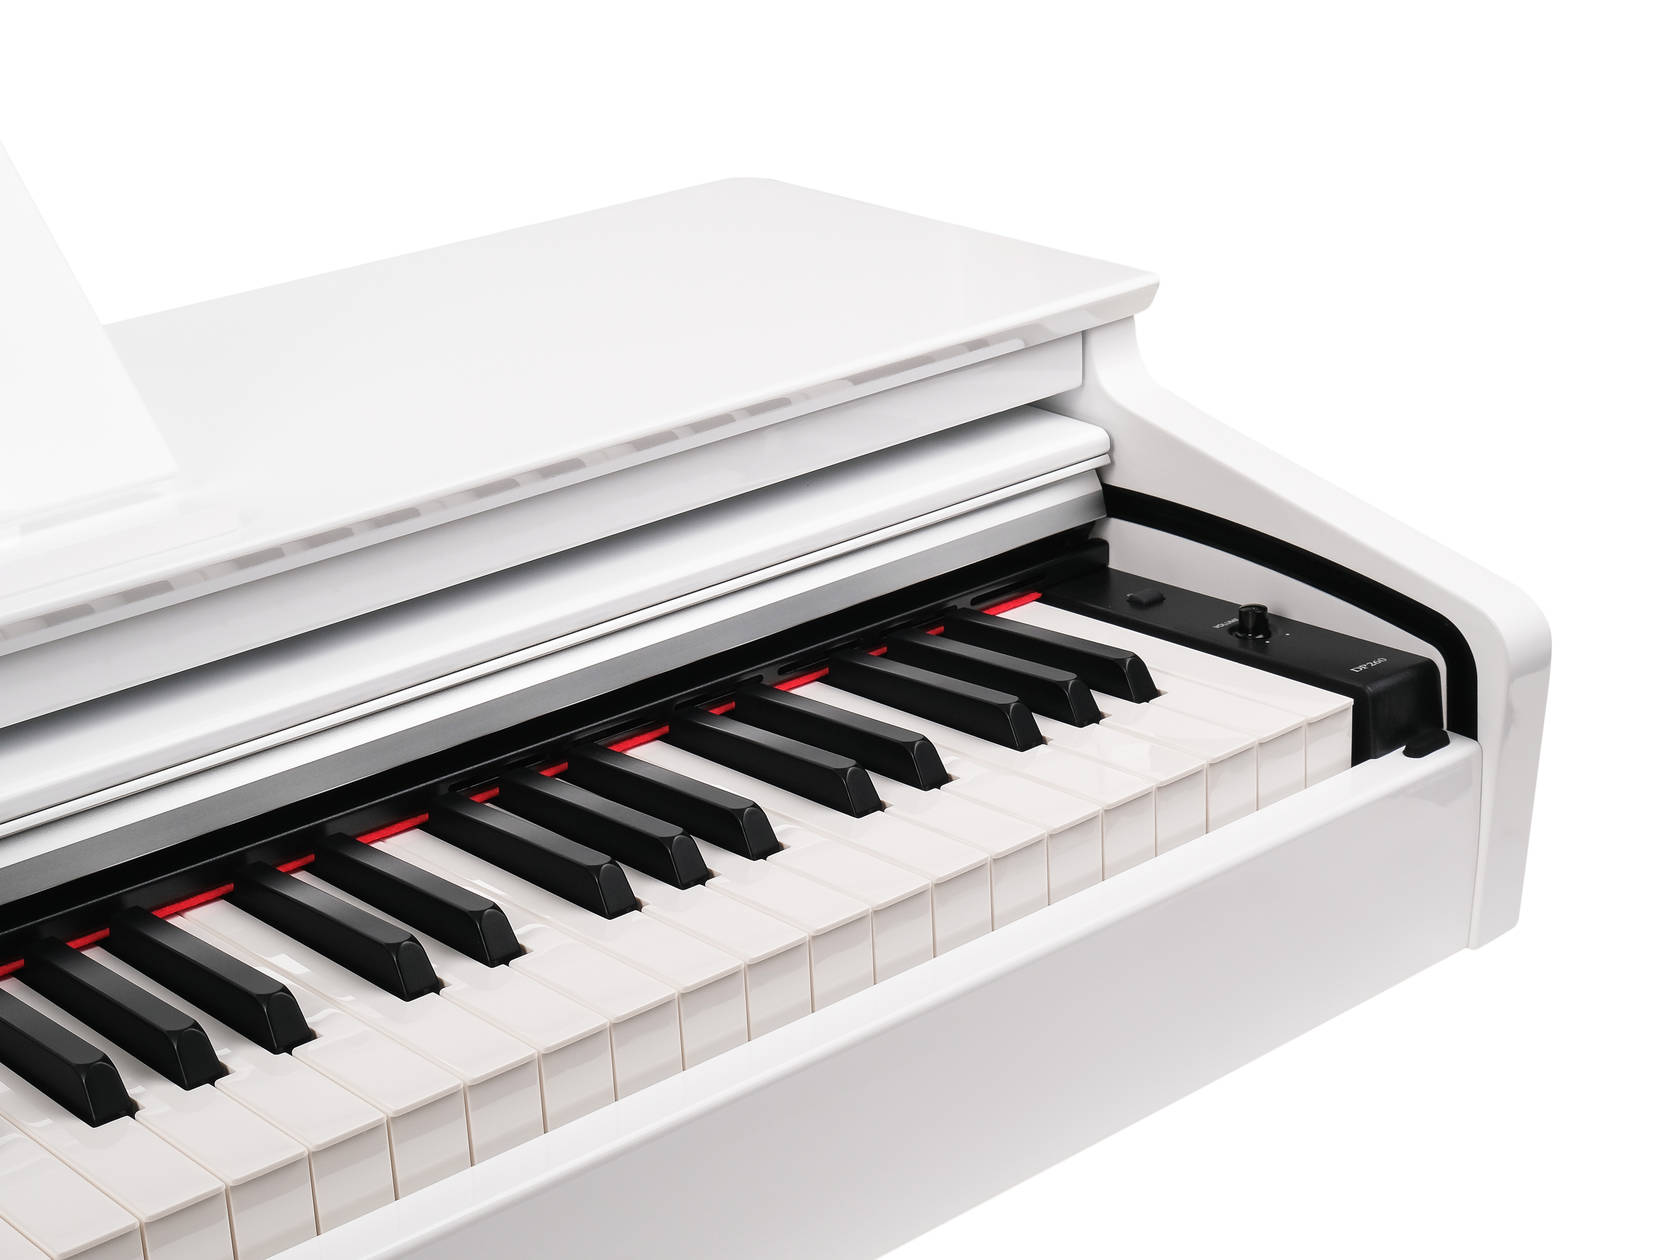 Medeli DP260-GW Цифровое пианино, белое глянцевое. купить в prostore.me